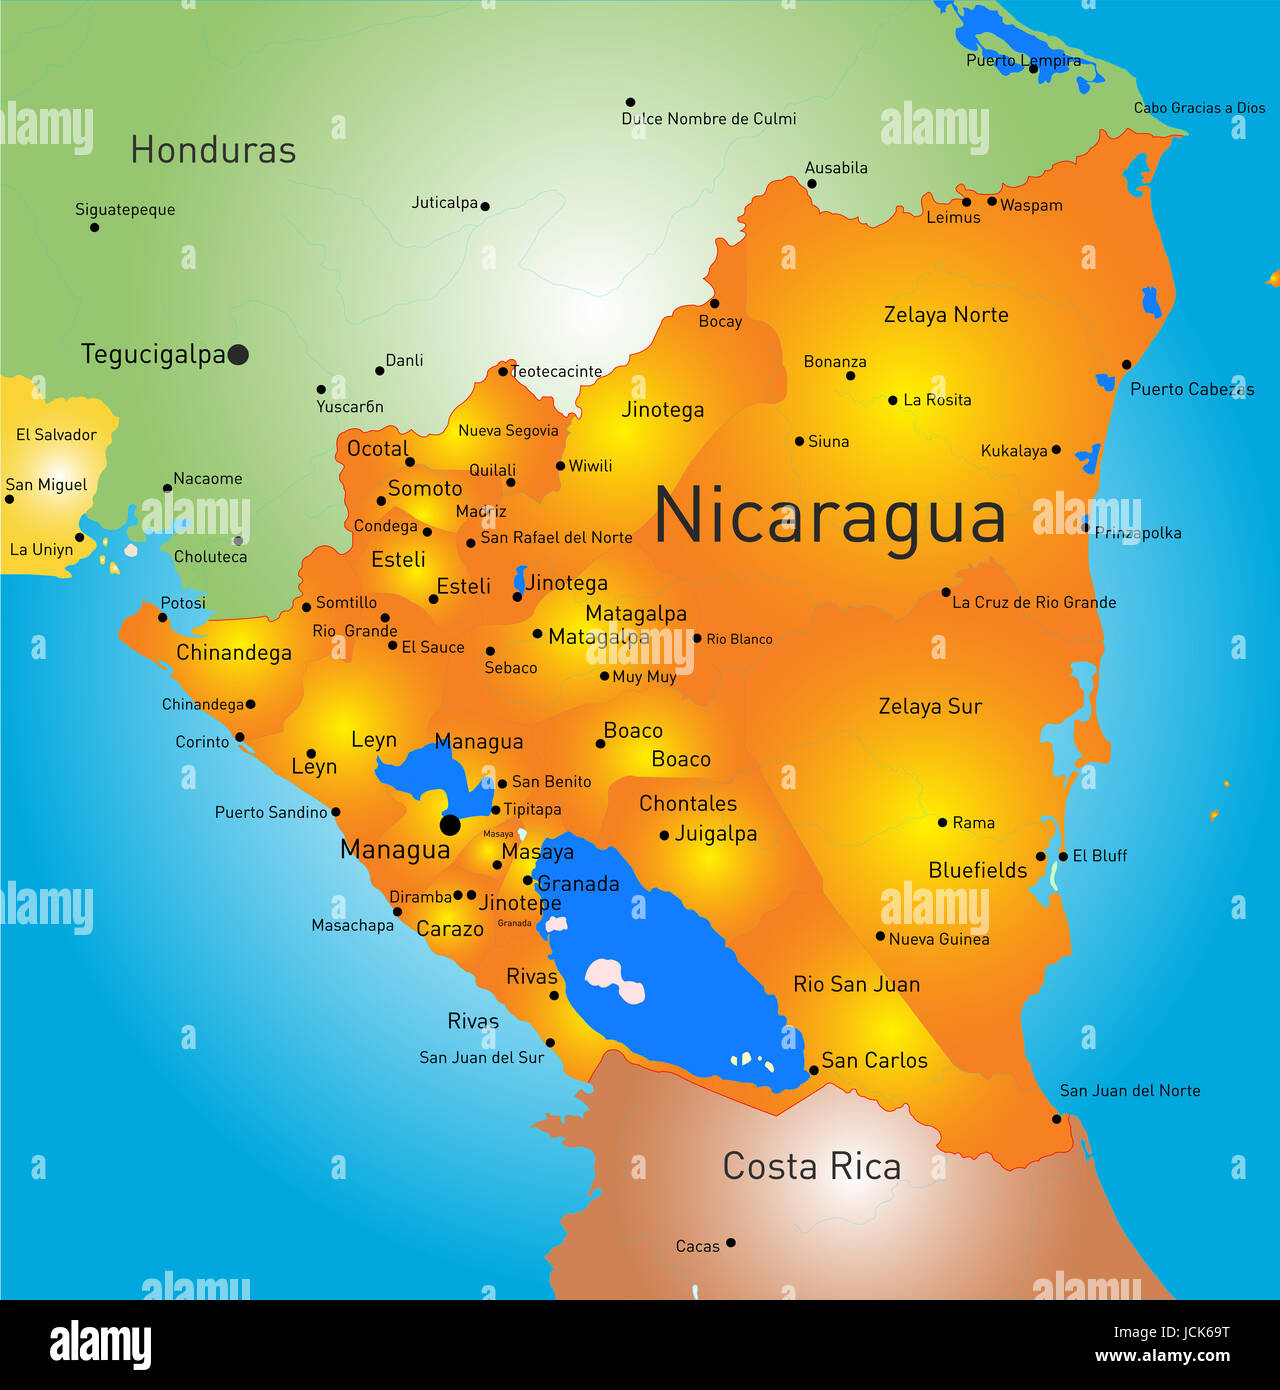 Mapa geografico de nicaragua fotografías e imágenes de alta resolución -  Alamy